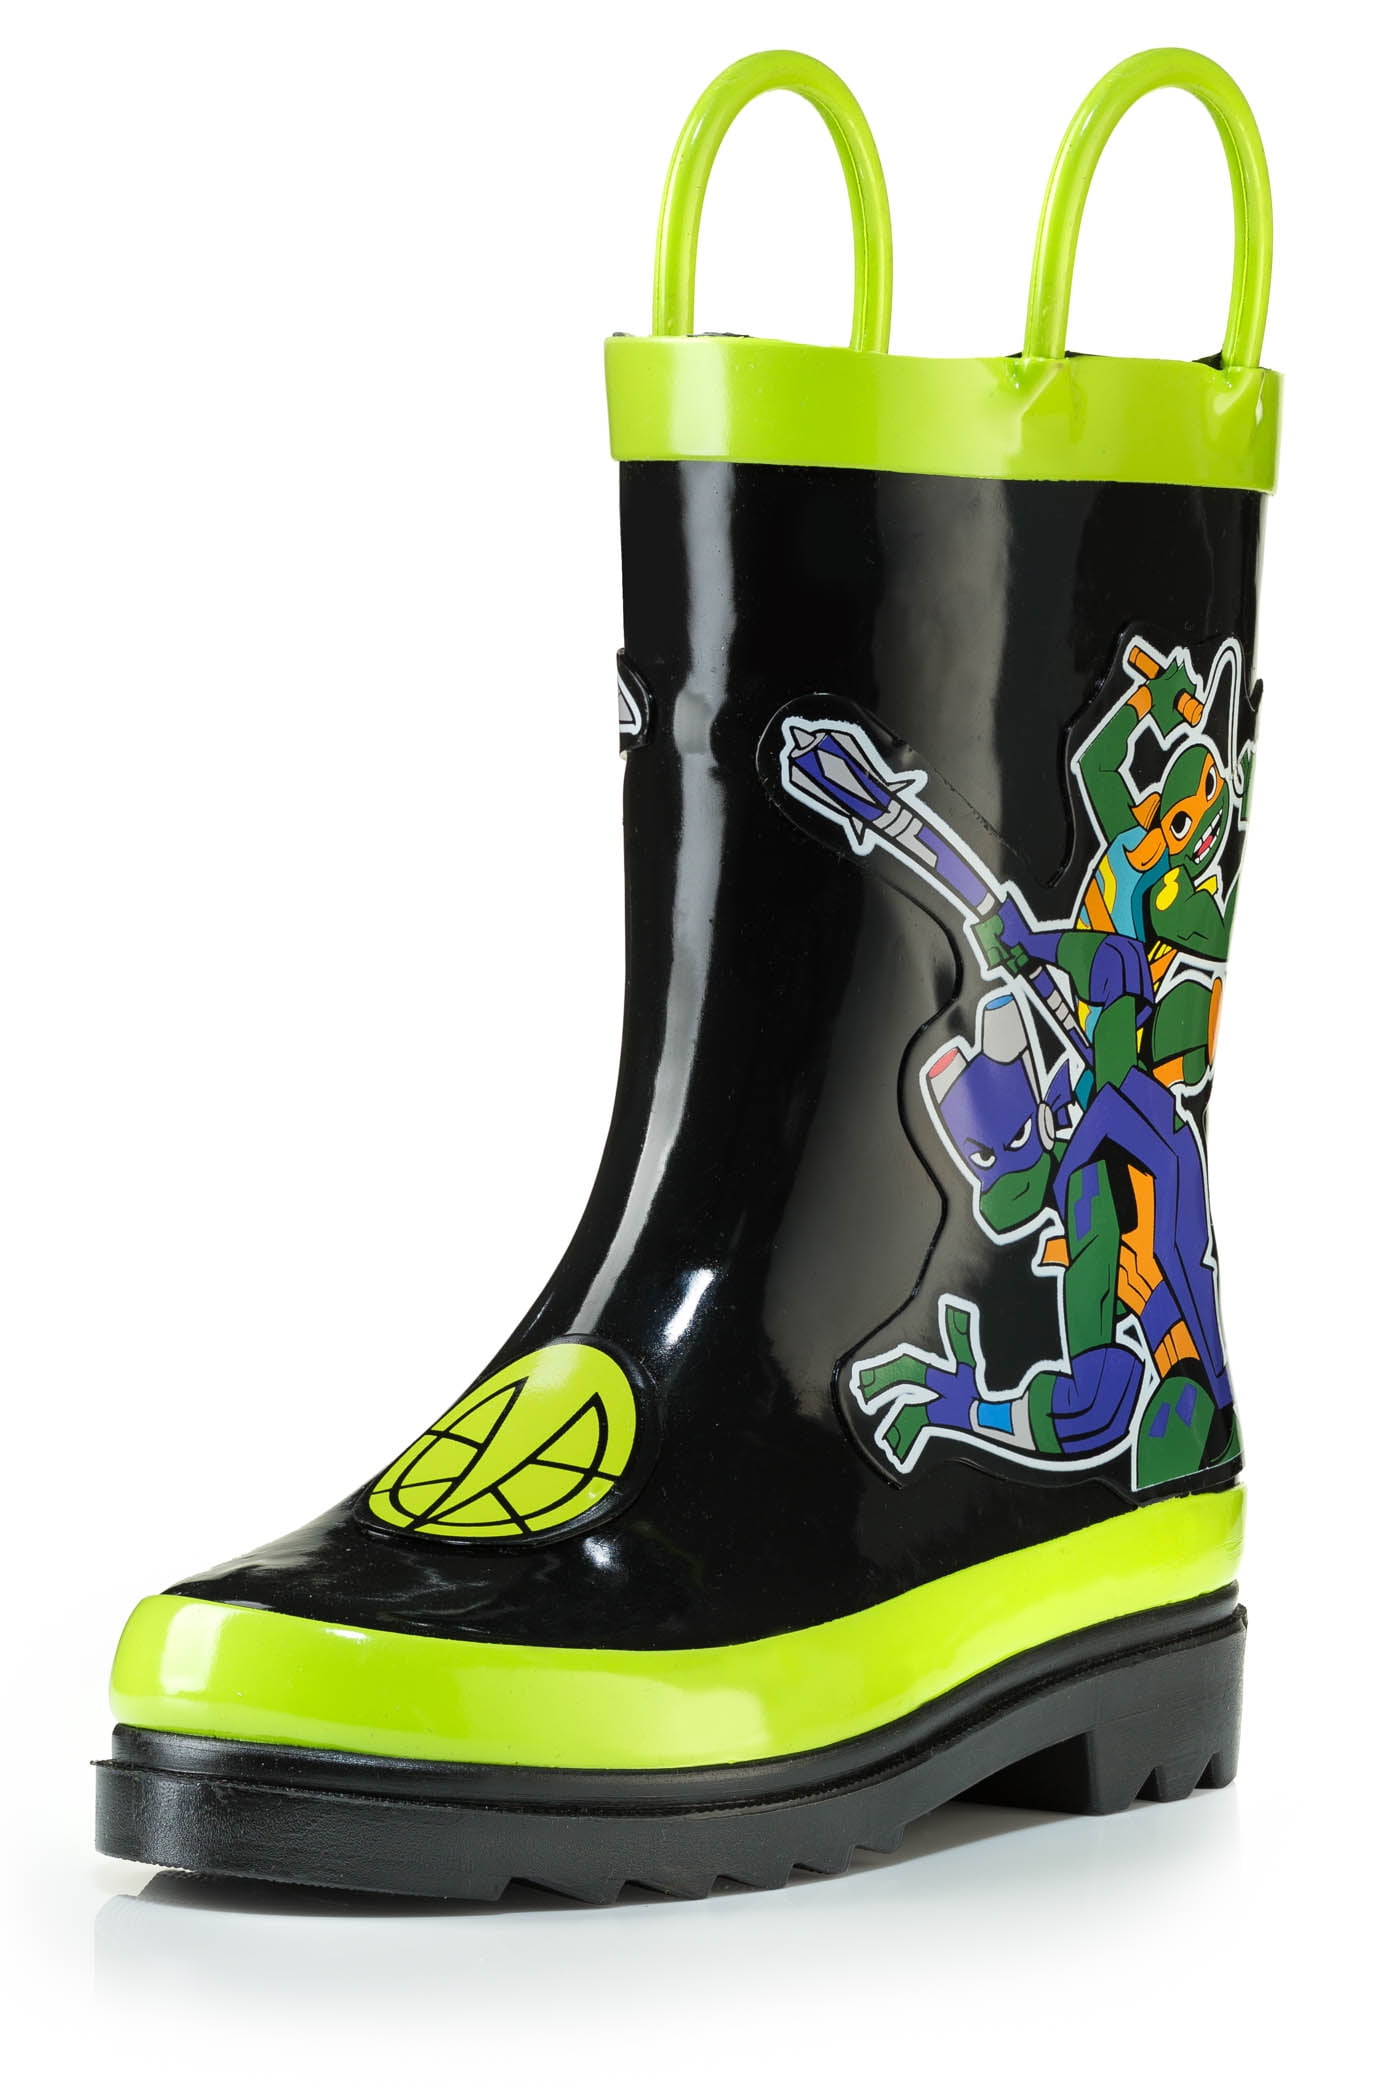 Black Rubber Rain Boots - Size 